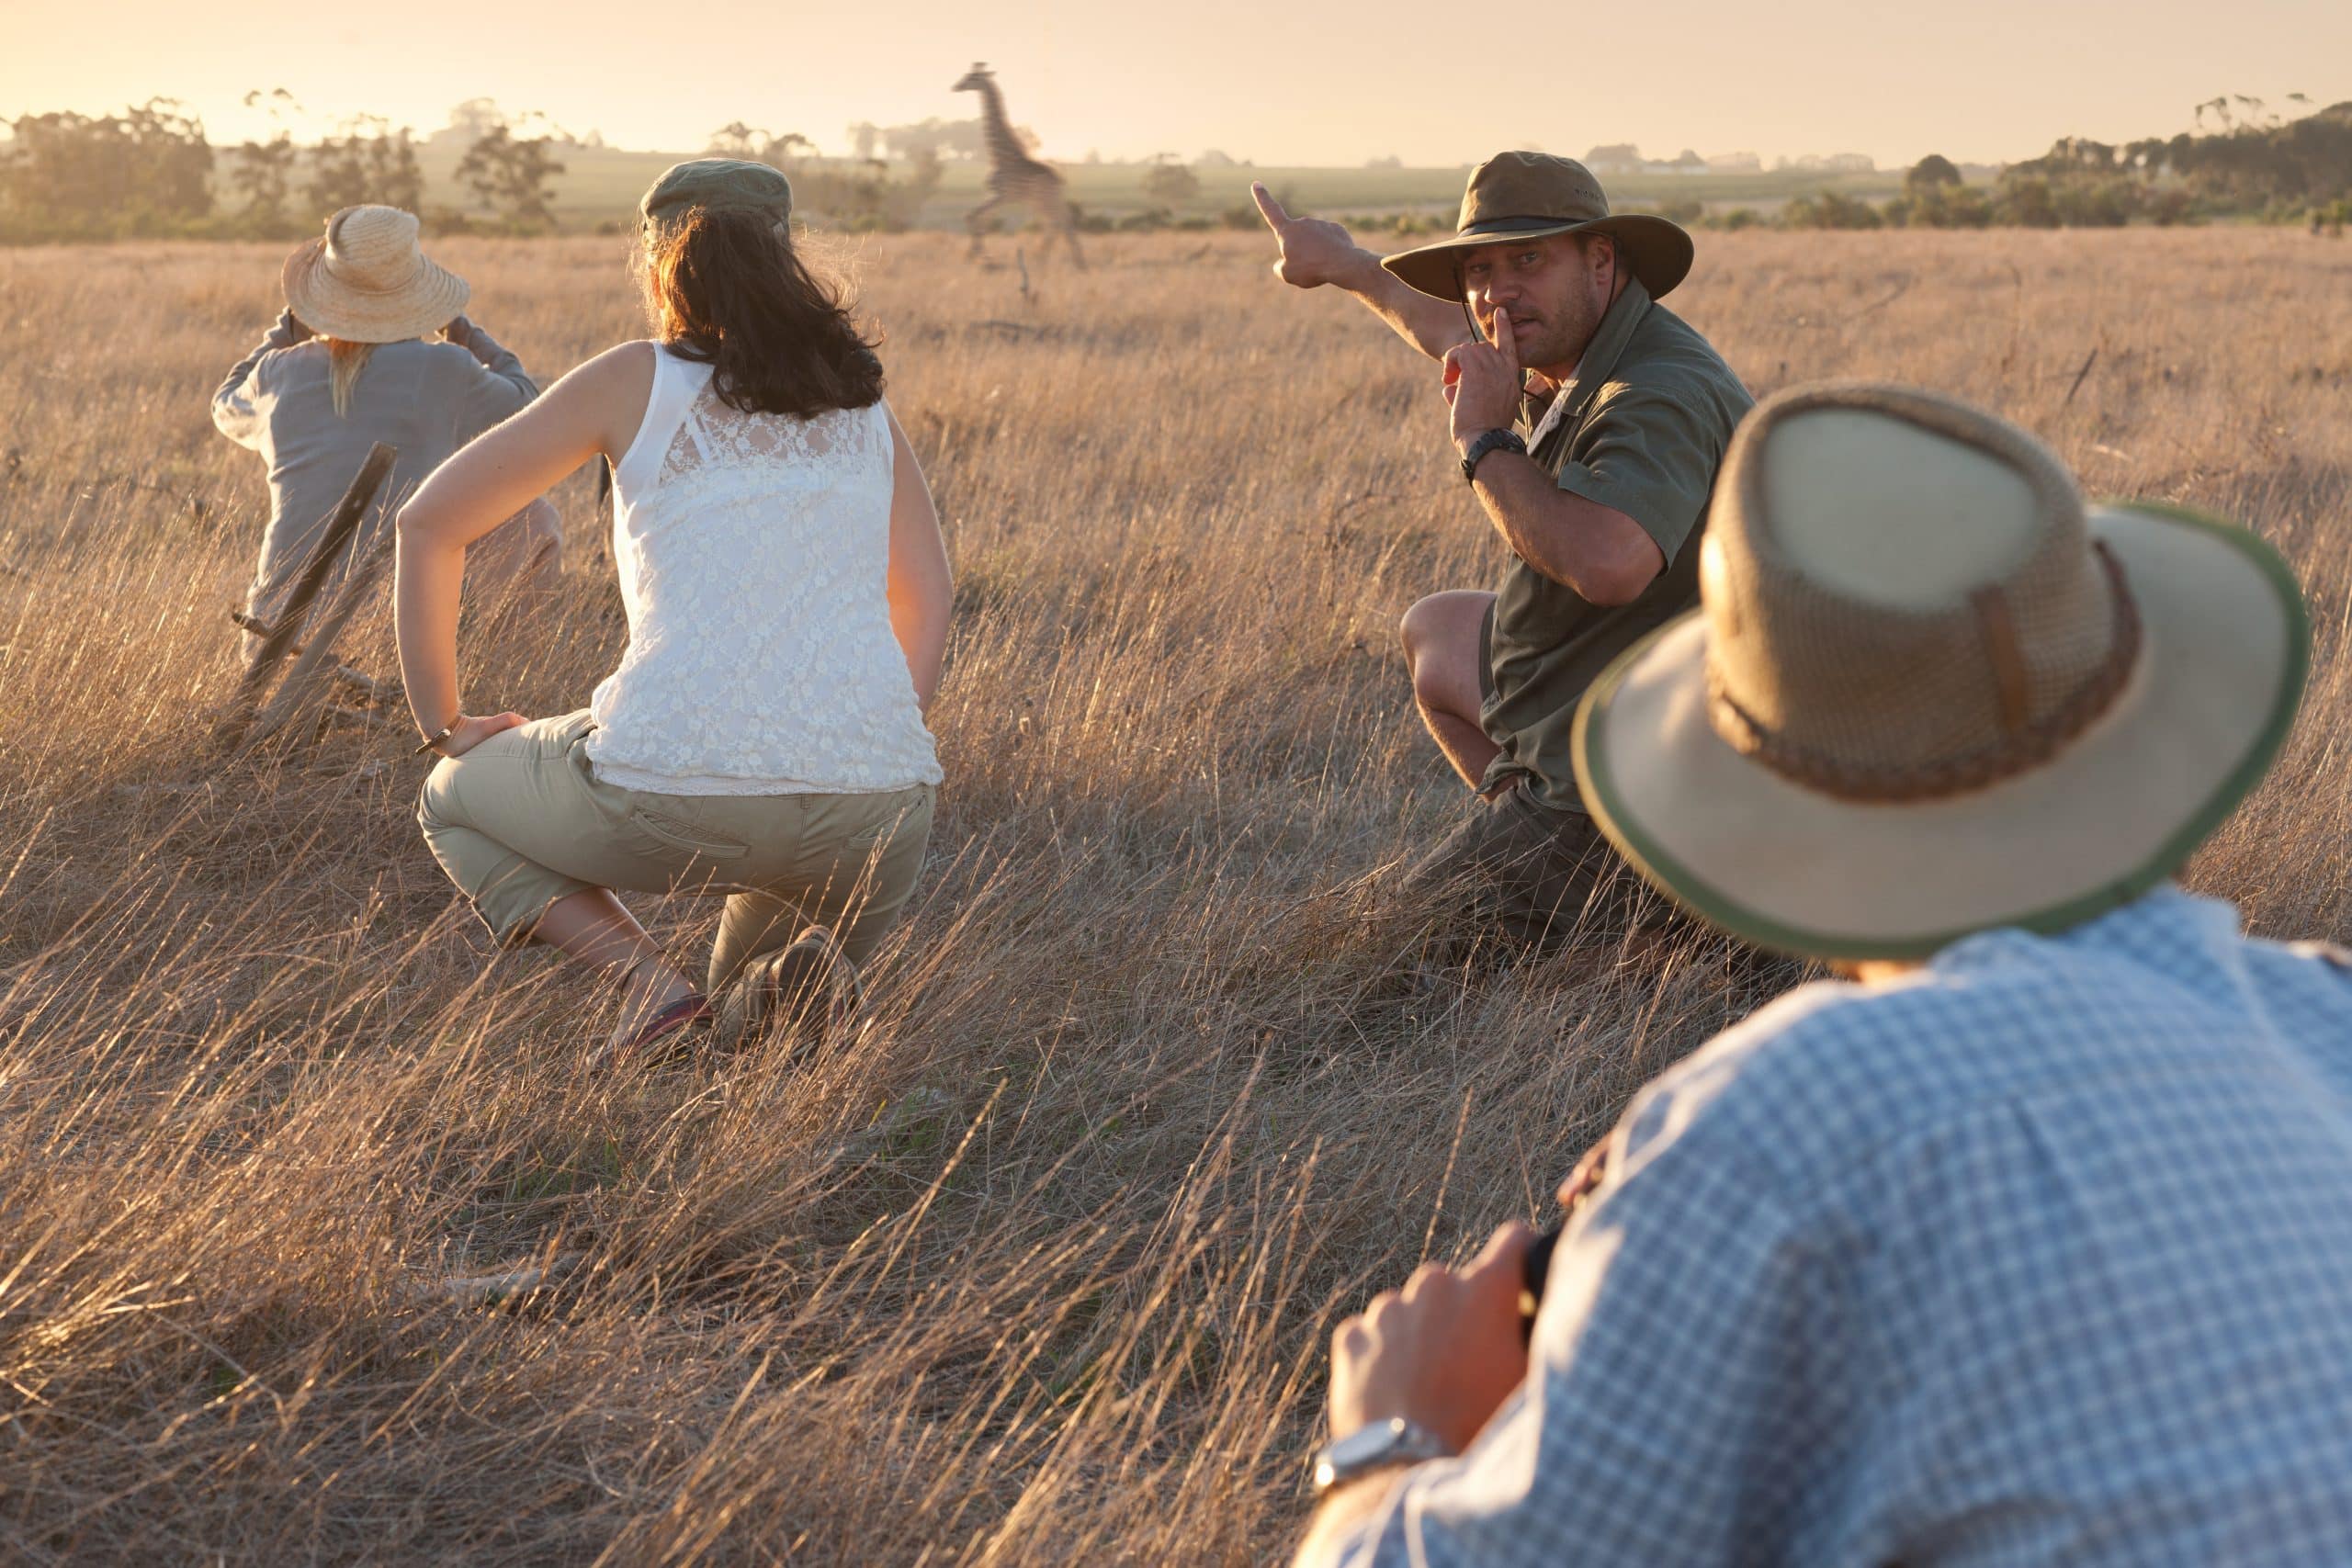 Comment réaliser un safari photo en Tanzanie ?